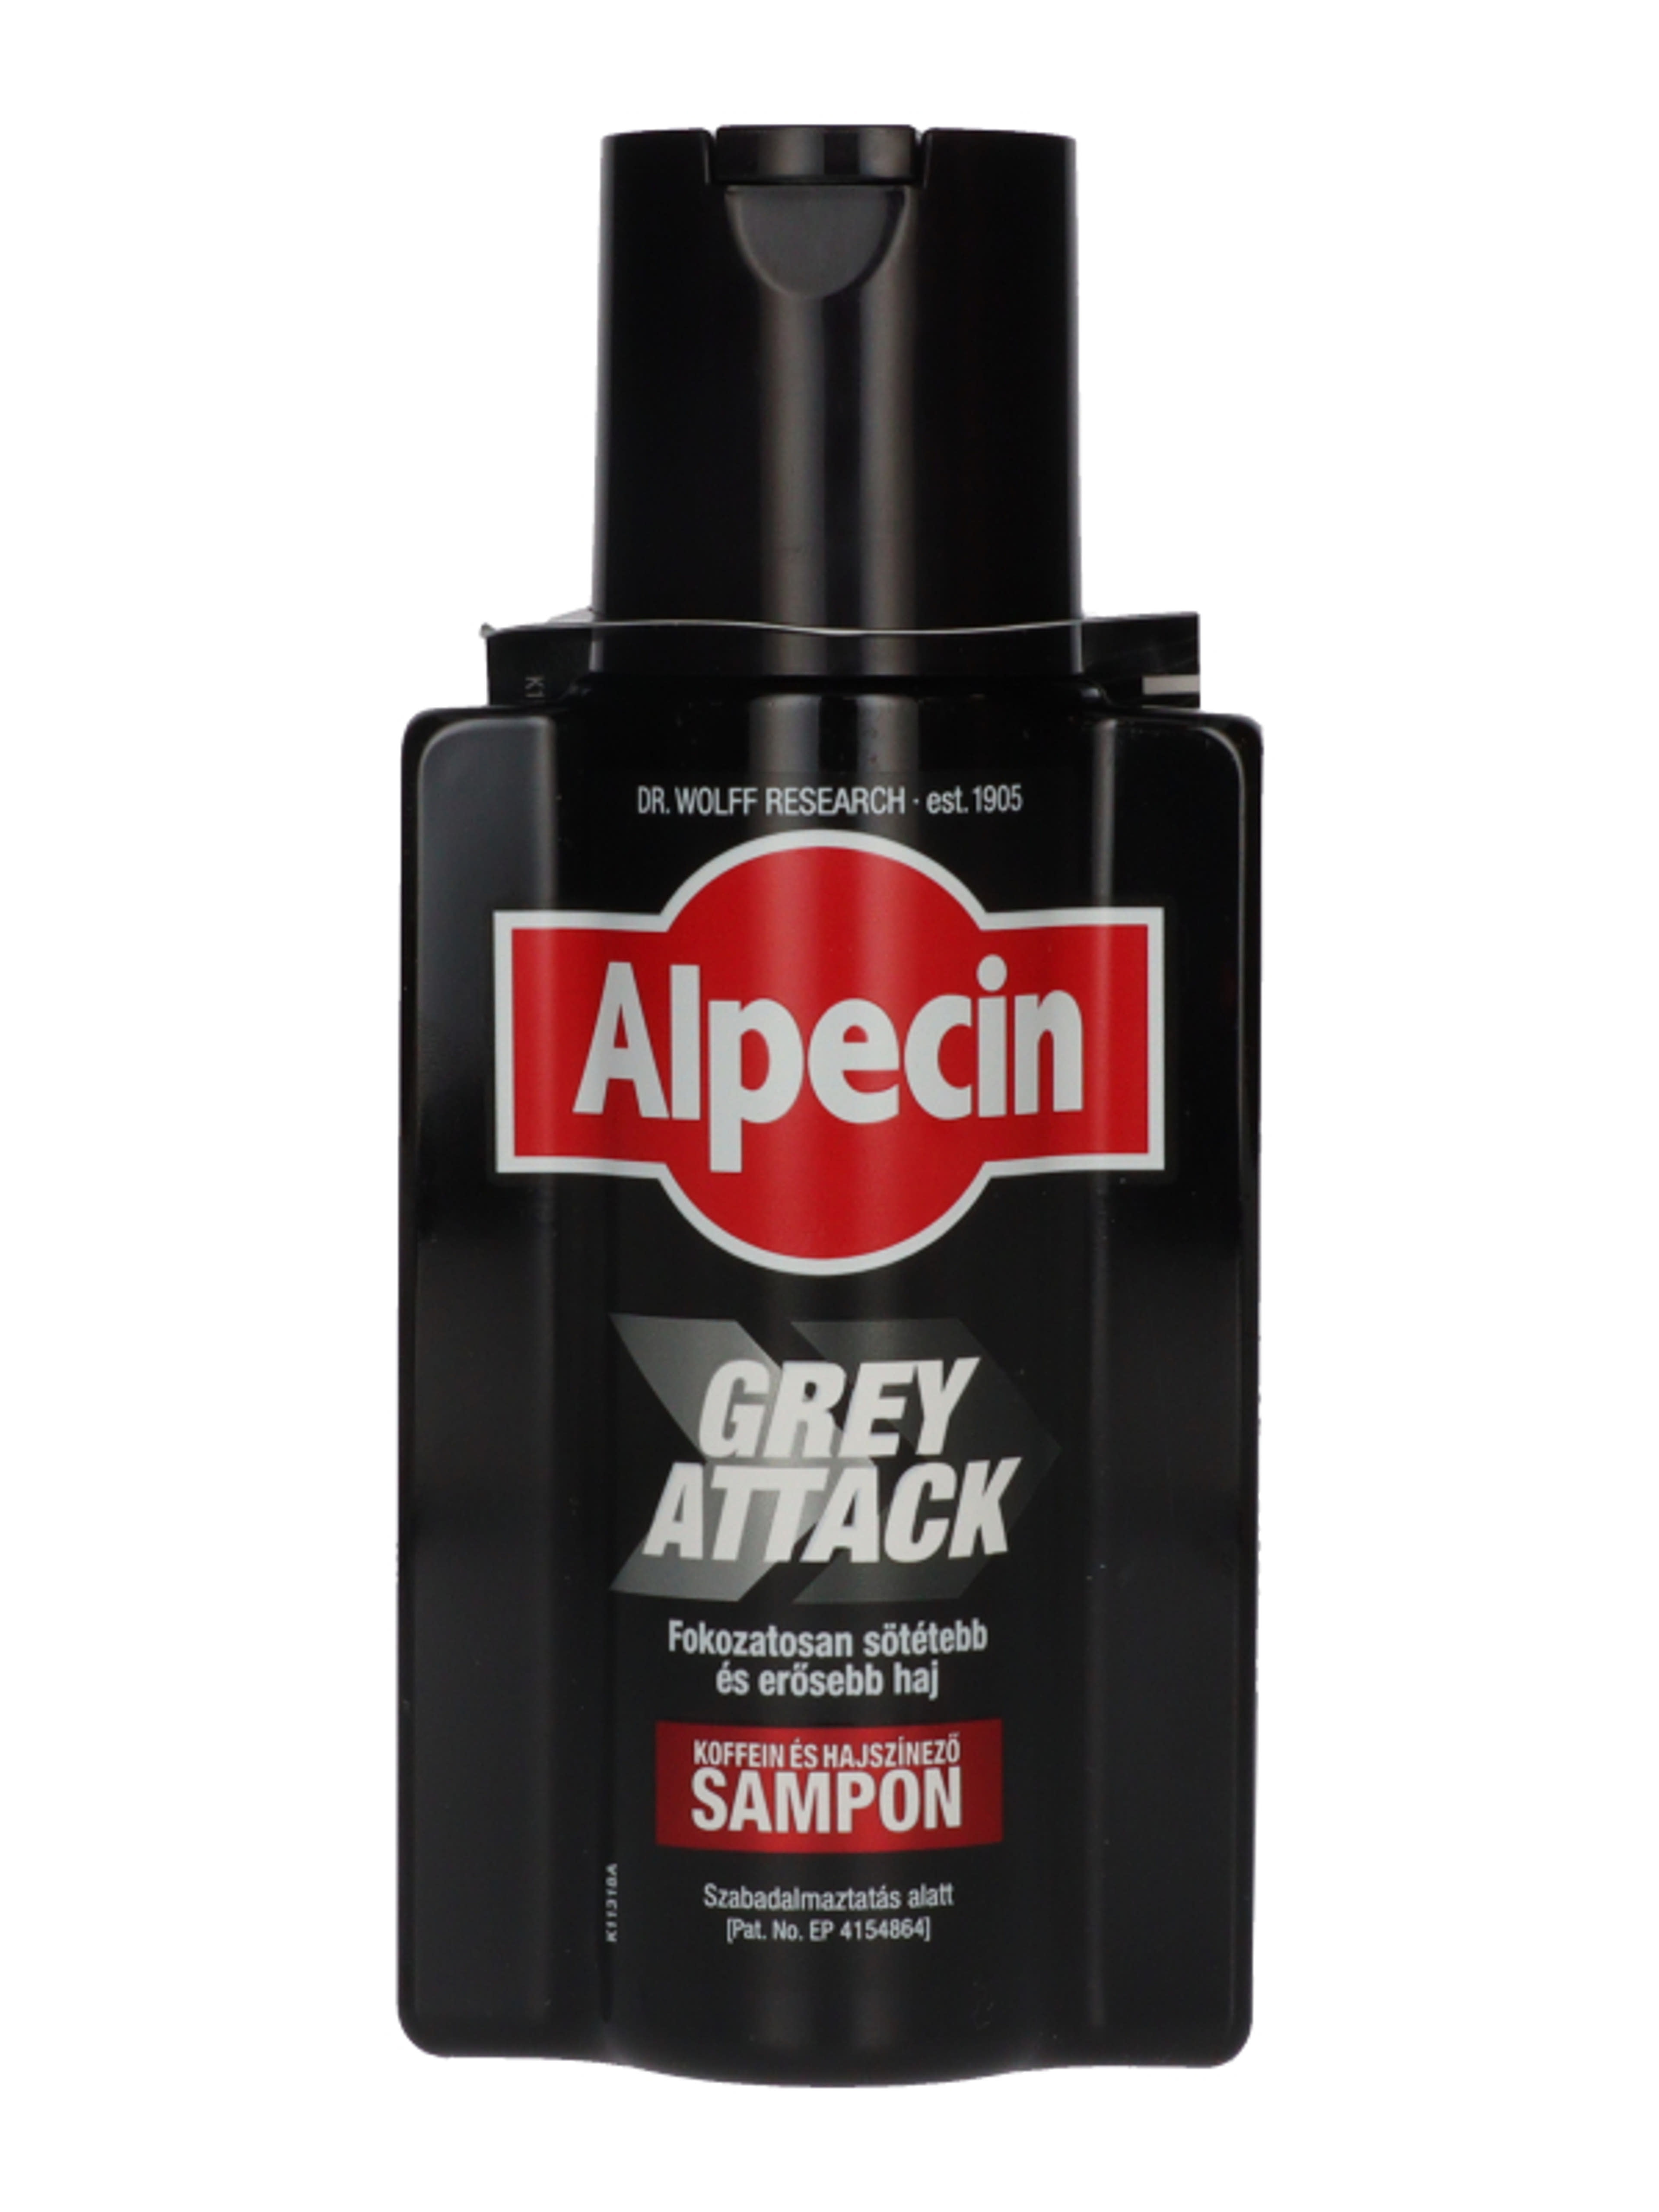 Alpecin Grey Attack hajszínező sampon - 200 ml